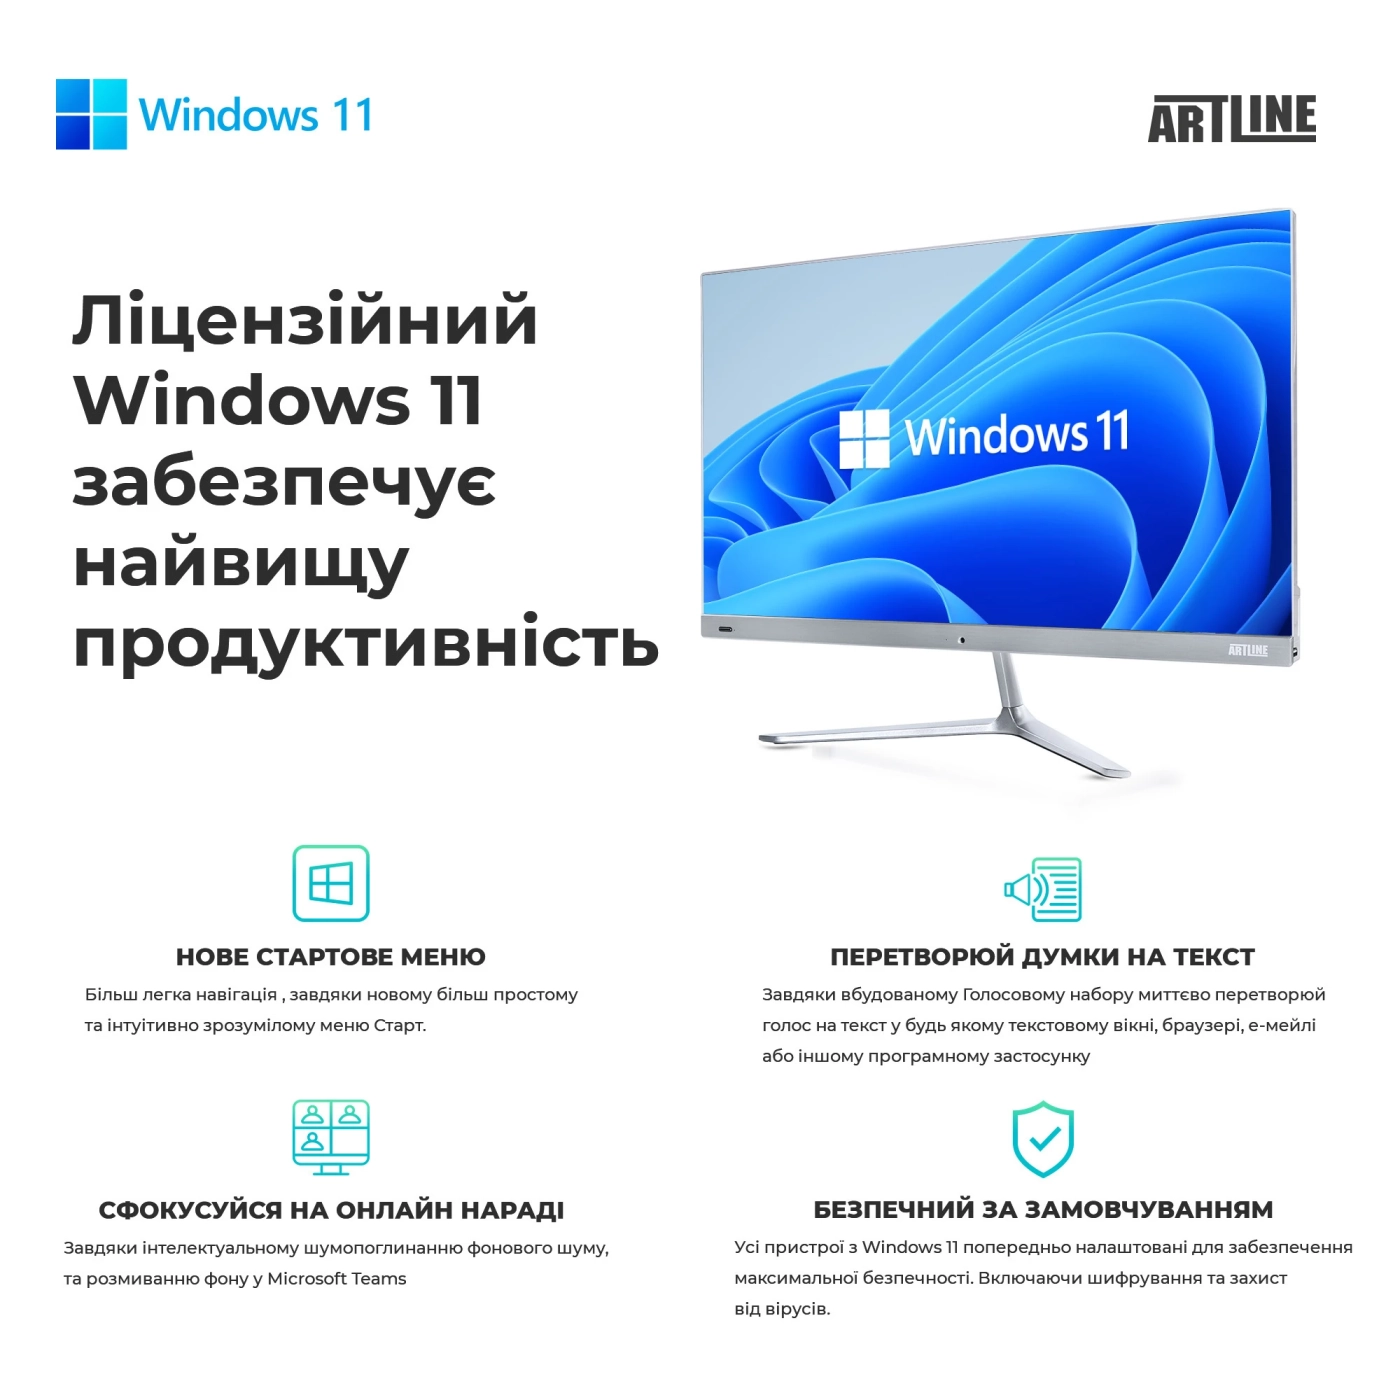 Купить Рабочая станция ARTLINE WorkStation W73 Windows 11 Pro (W73v25Win) - фото 8